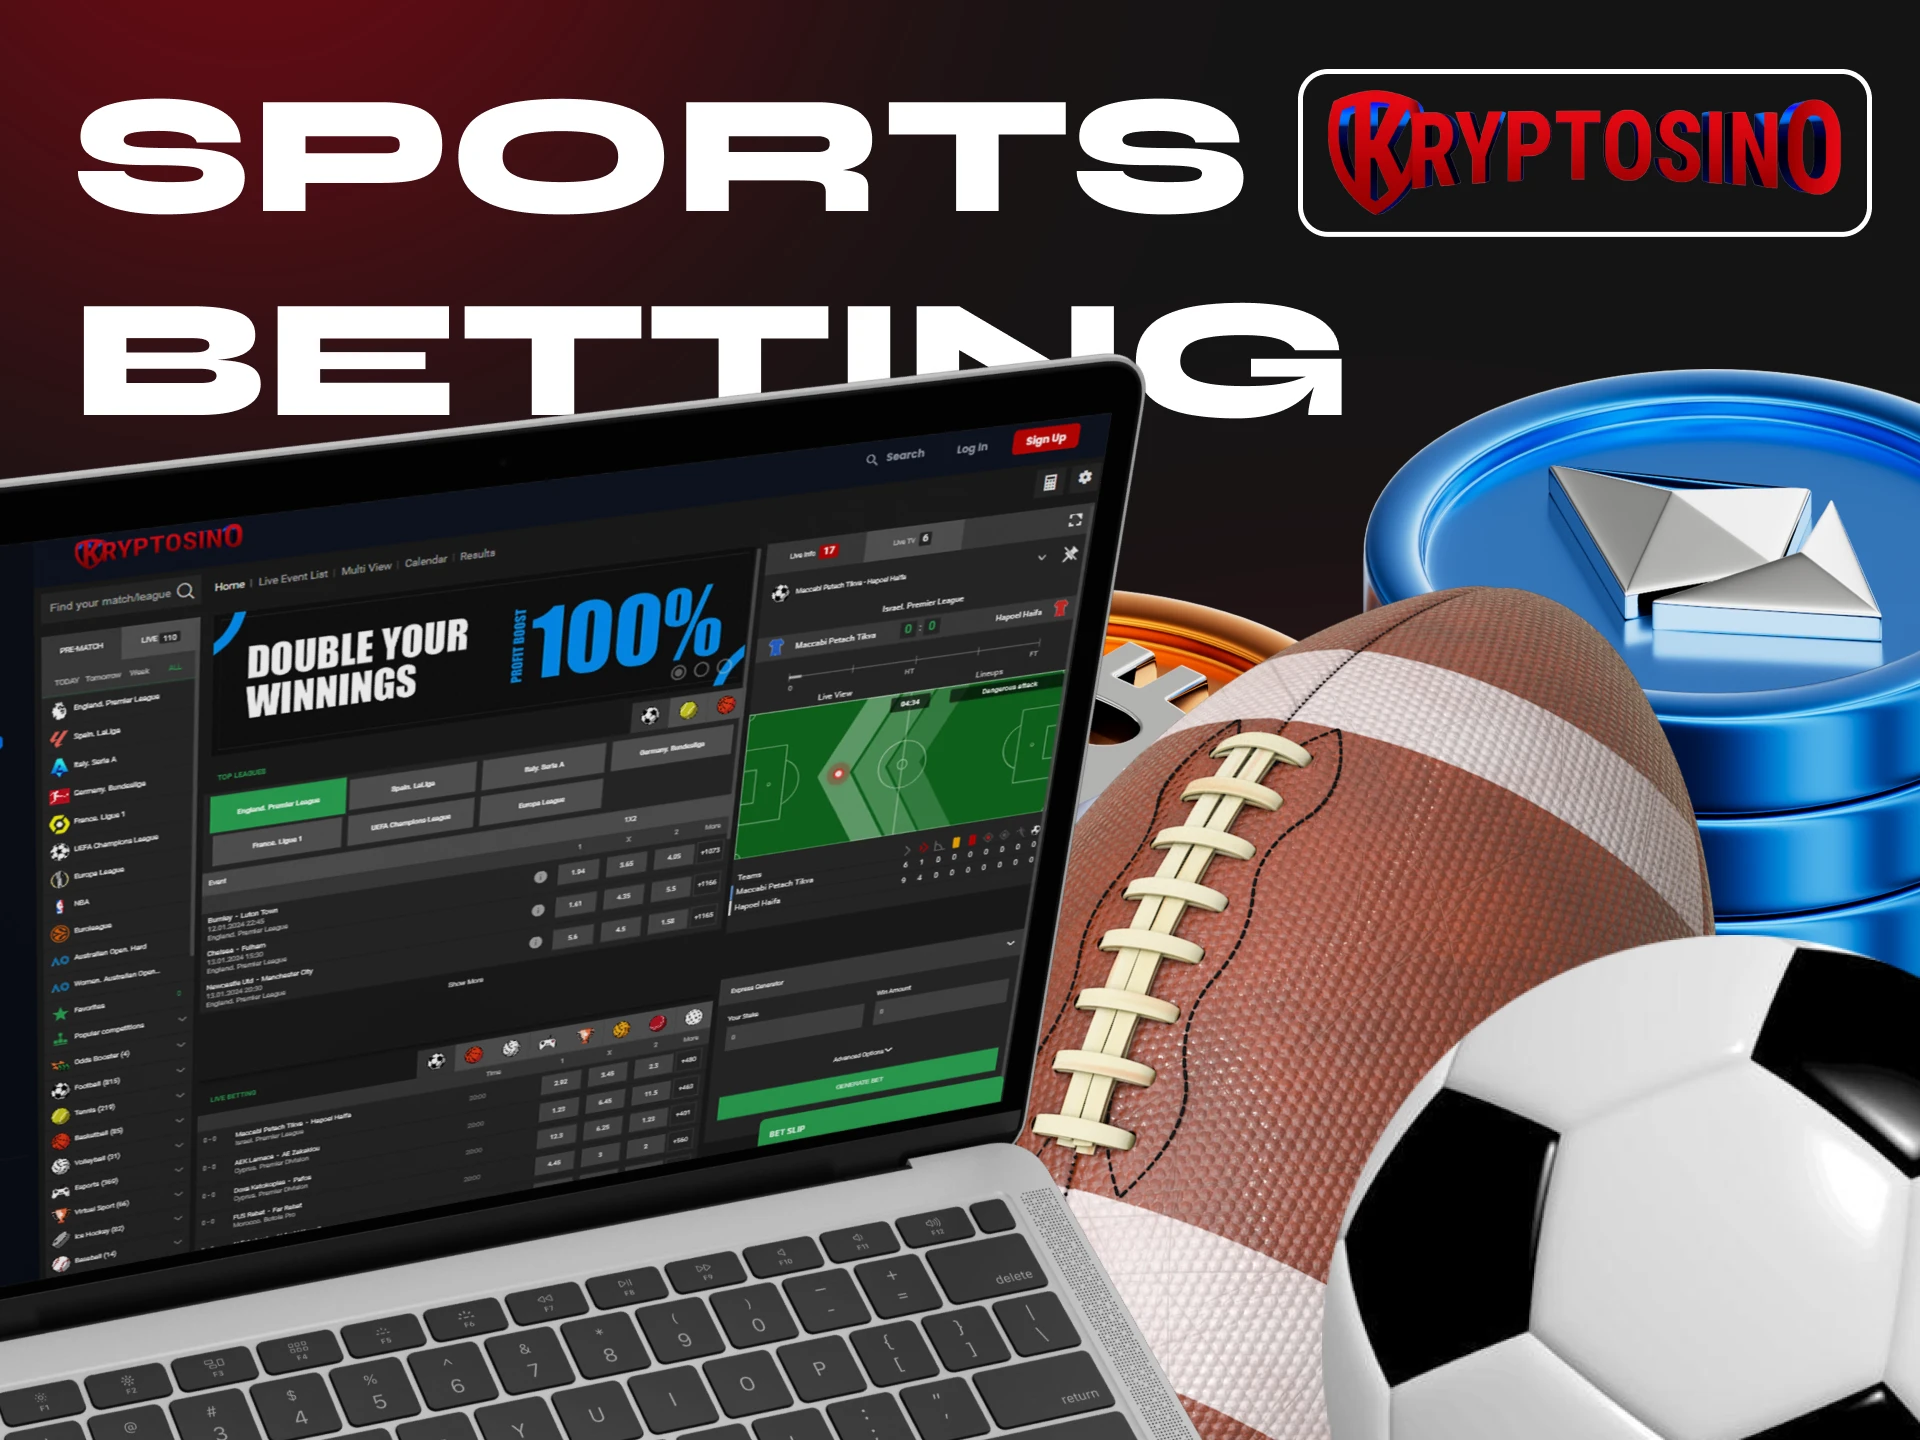 Kryptosino Casino has many sports disciplines for betting.